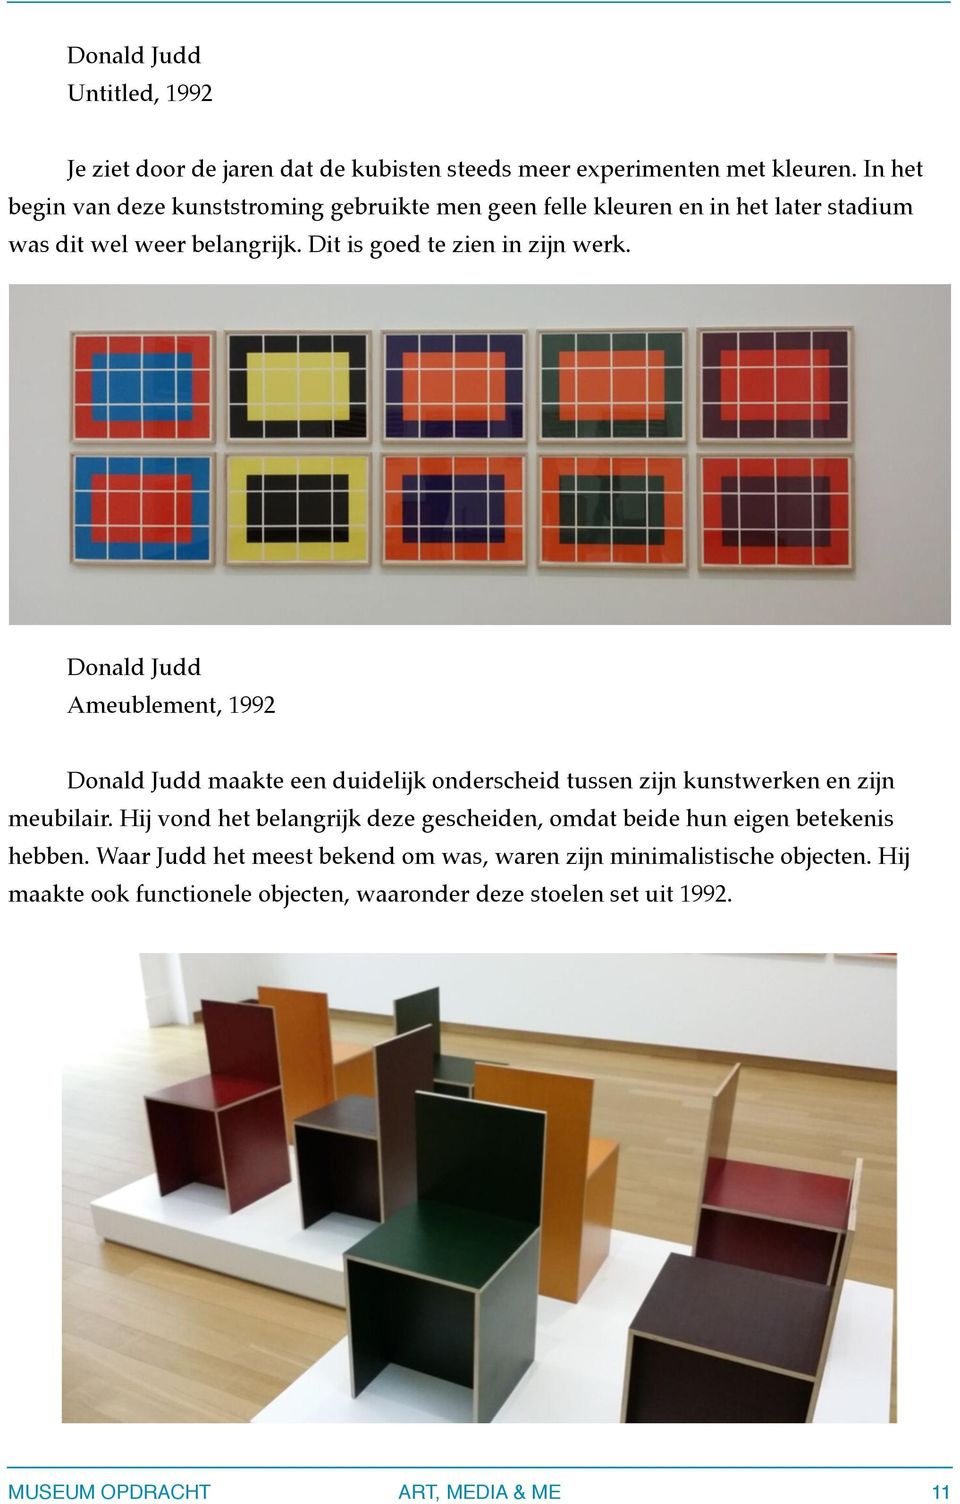 Donald Judd Ameublement, 1992 Donald Judd maakte een duidelijk onderscheid tussen zijn kunstwerken en zijn meubilair.